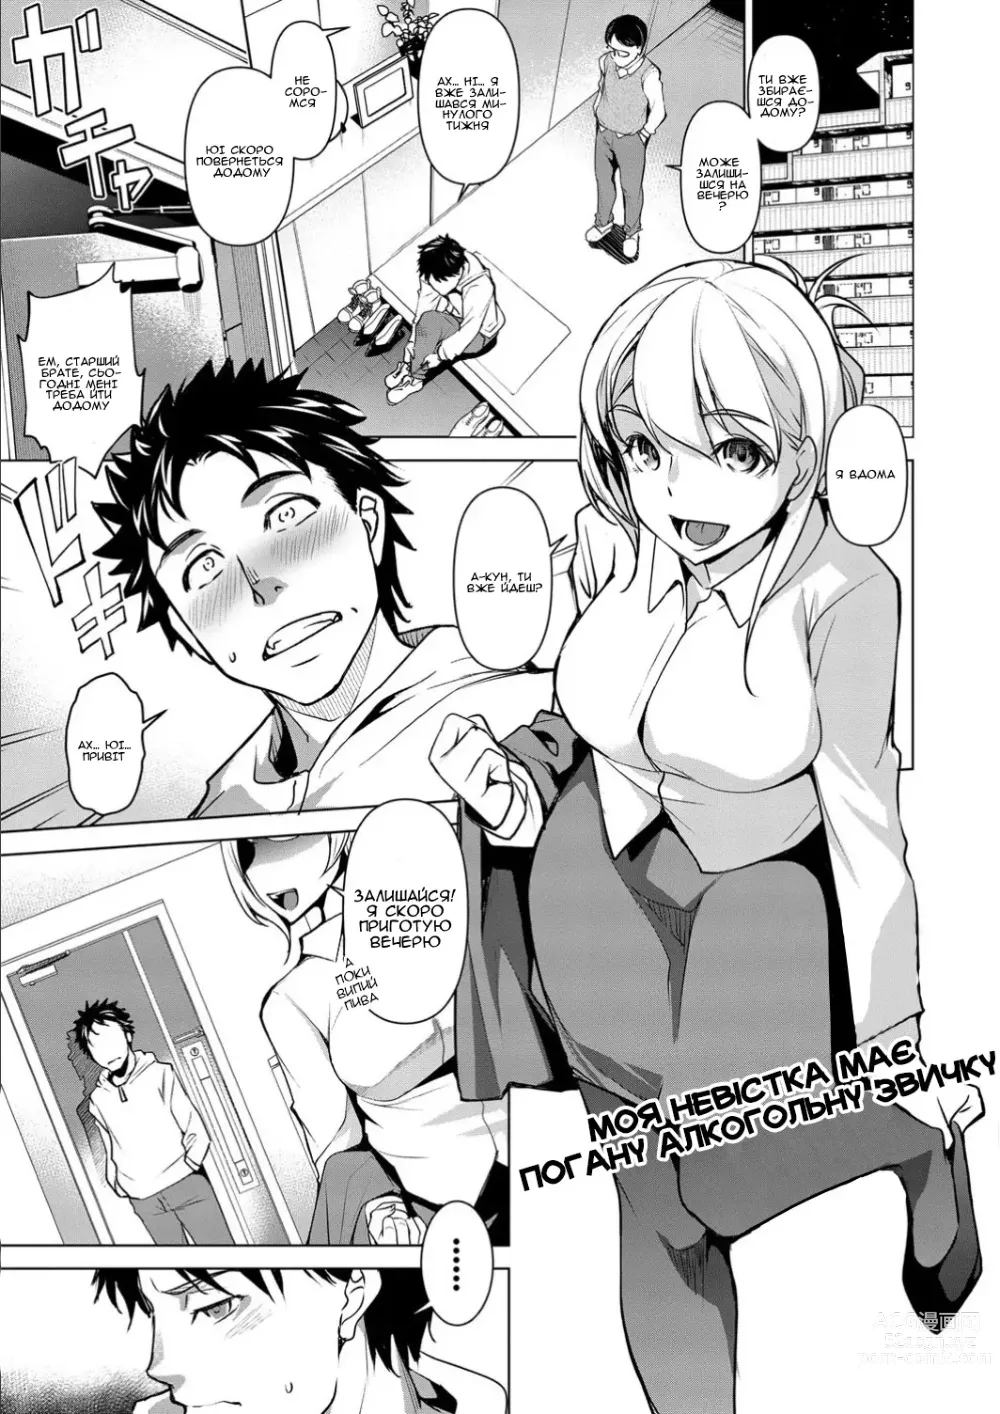 Page 1 of manga Моя невістка має погану алкогольну звичку